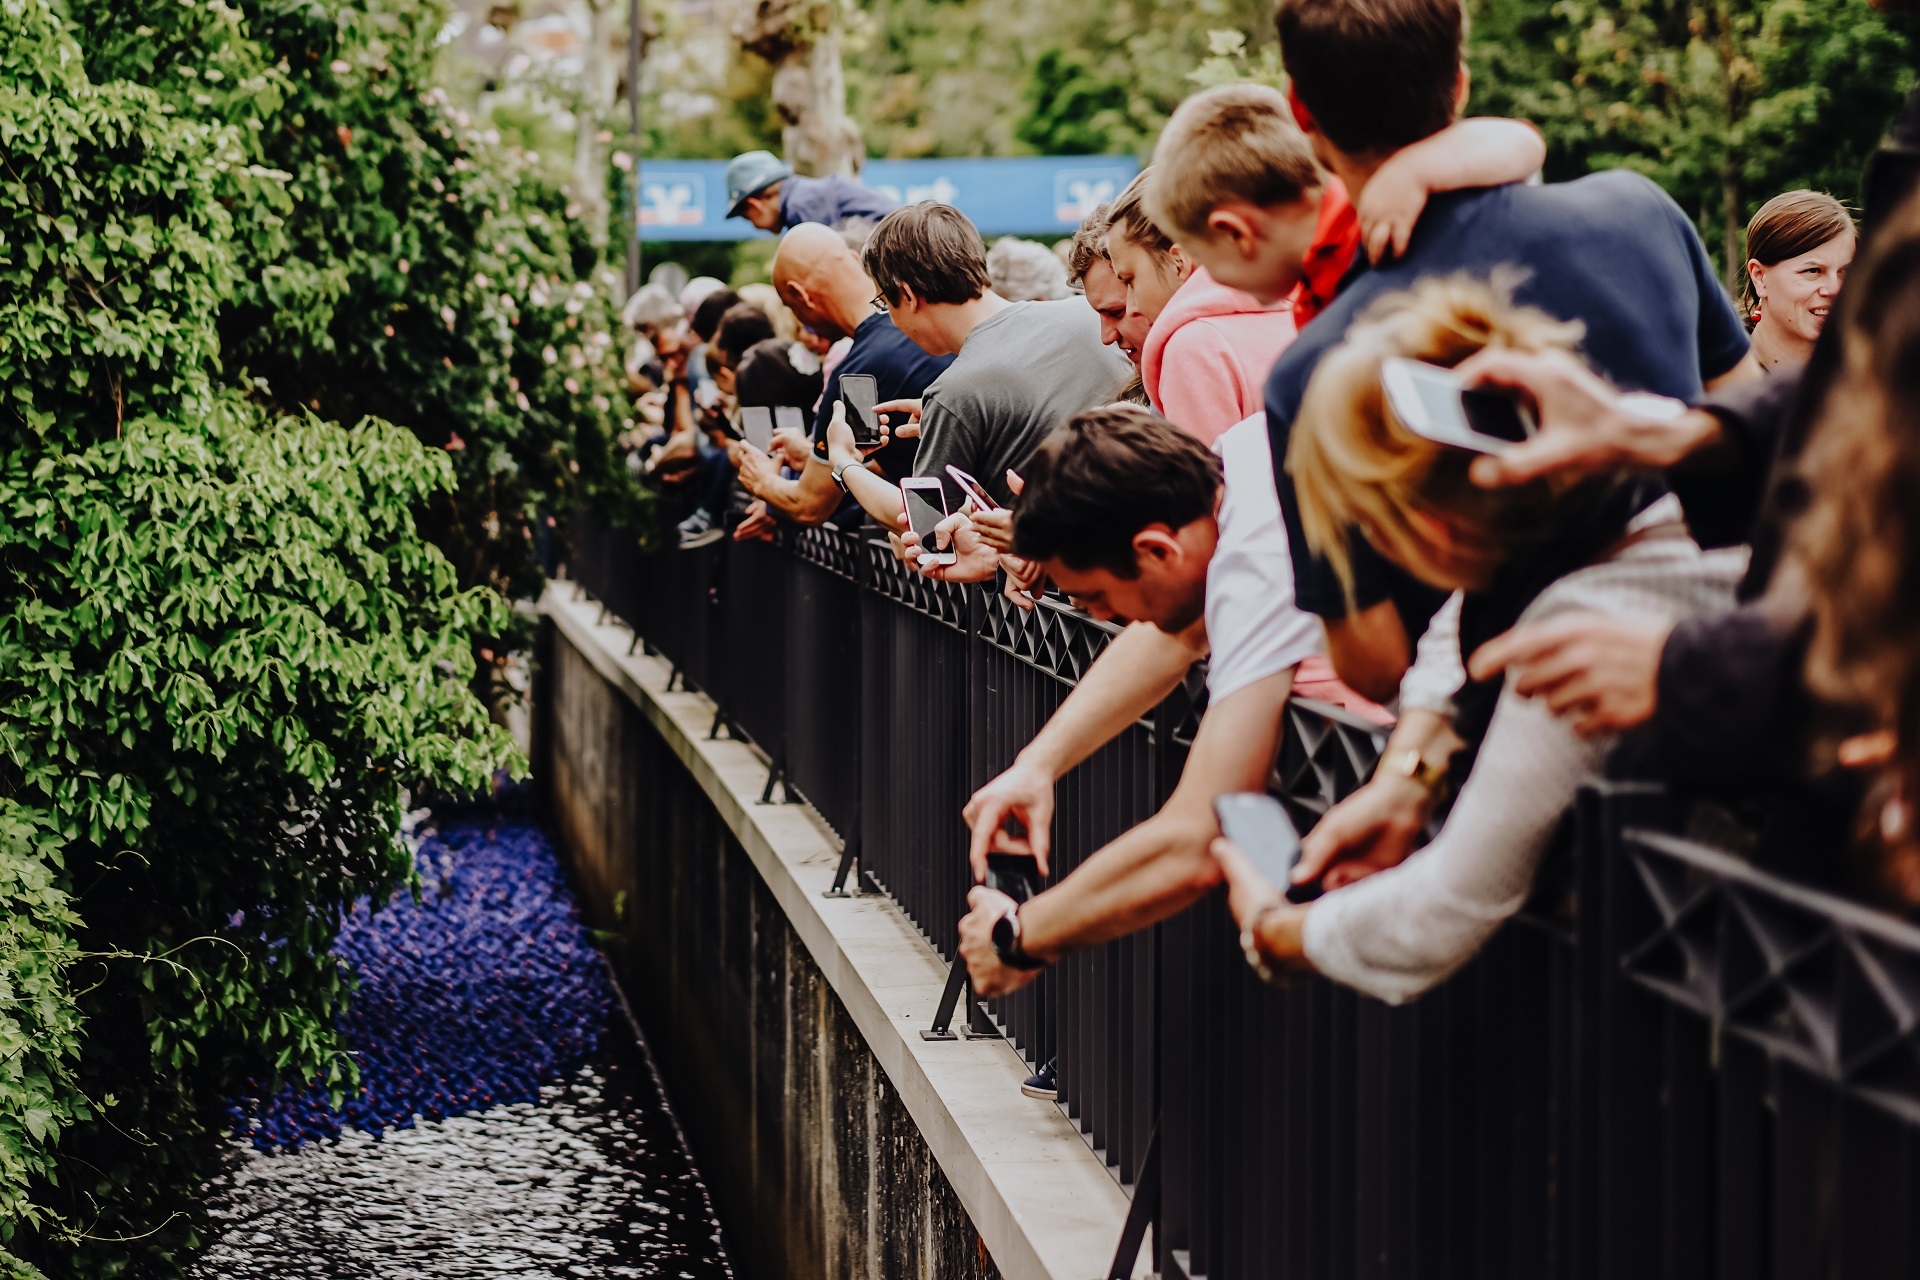 Im Vordergrund stehen die Zuschauer vom Entenrennen welche sich von der Brücke im Kurpark runterlehnen, um ein Bild von den dunkelblauen Enten in der Isenach zu machen. Die Zuschauer machen die Bilder mit Ihren Smartphones.